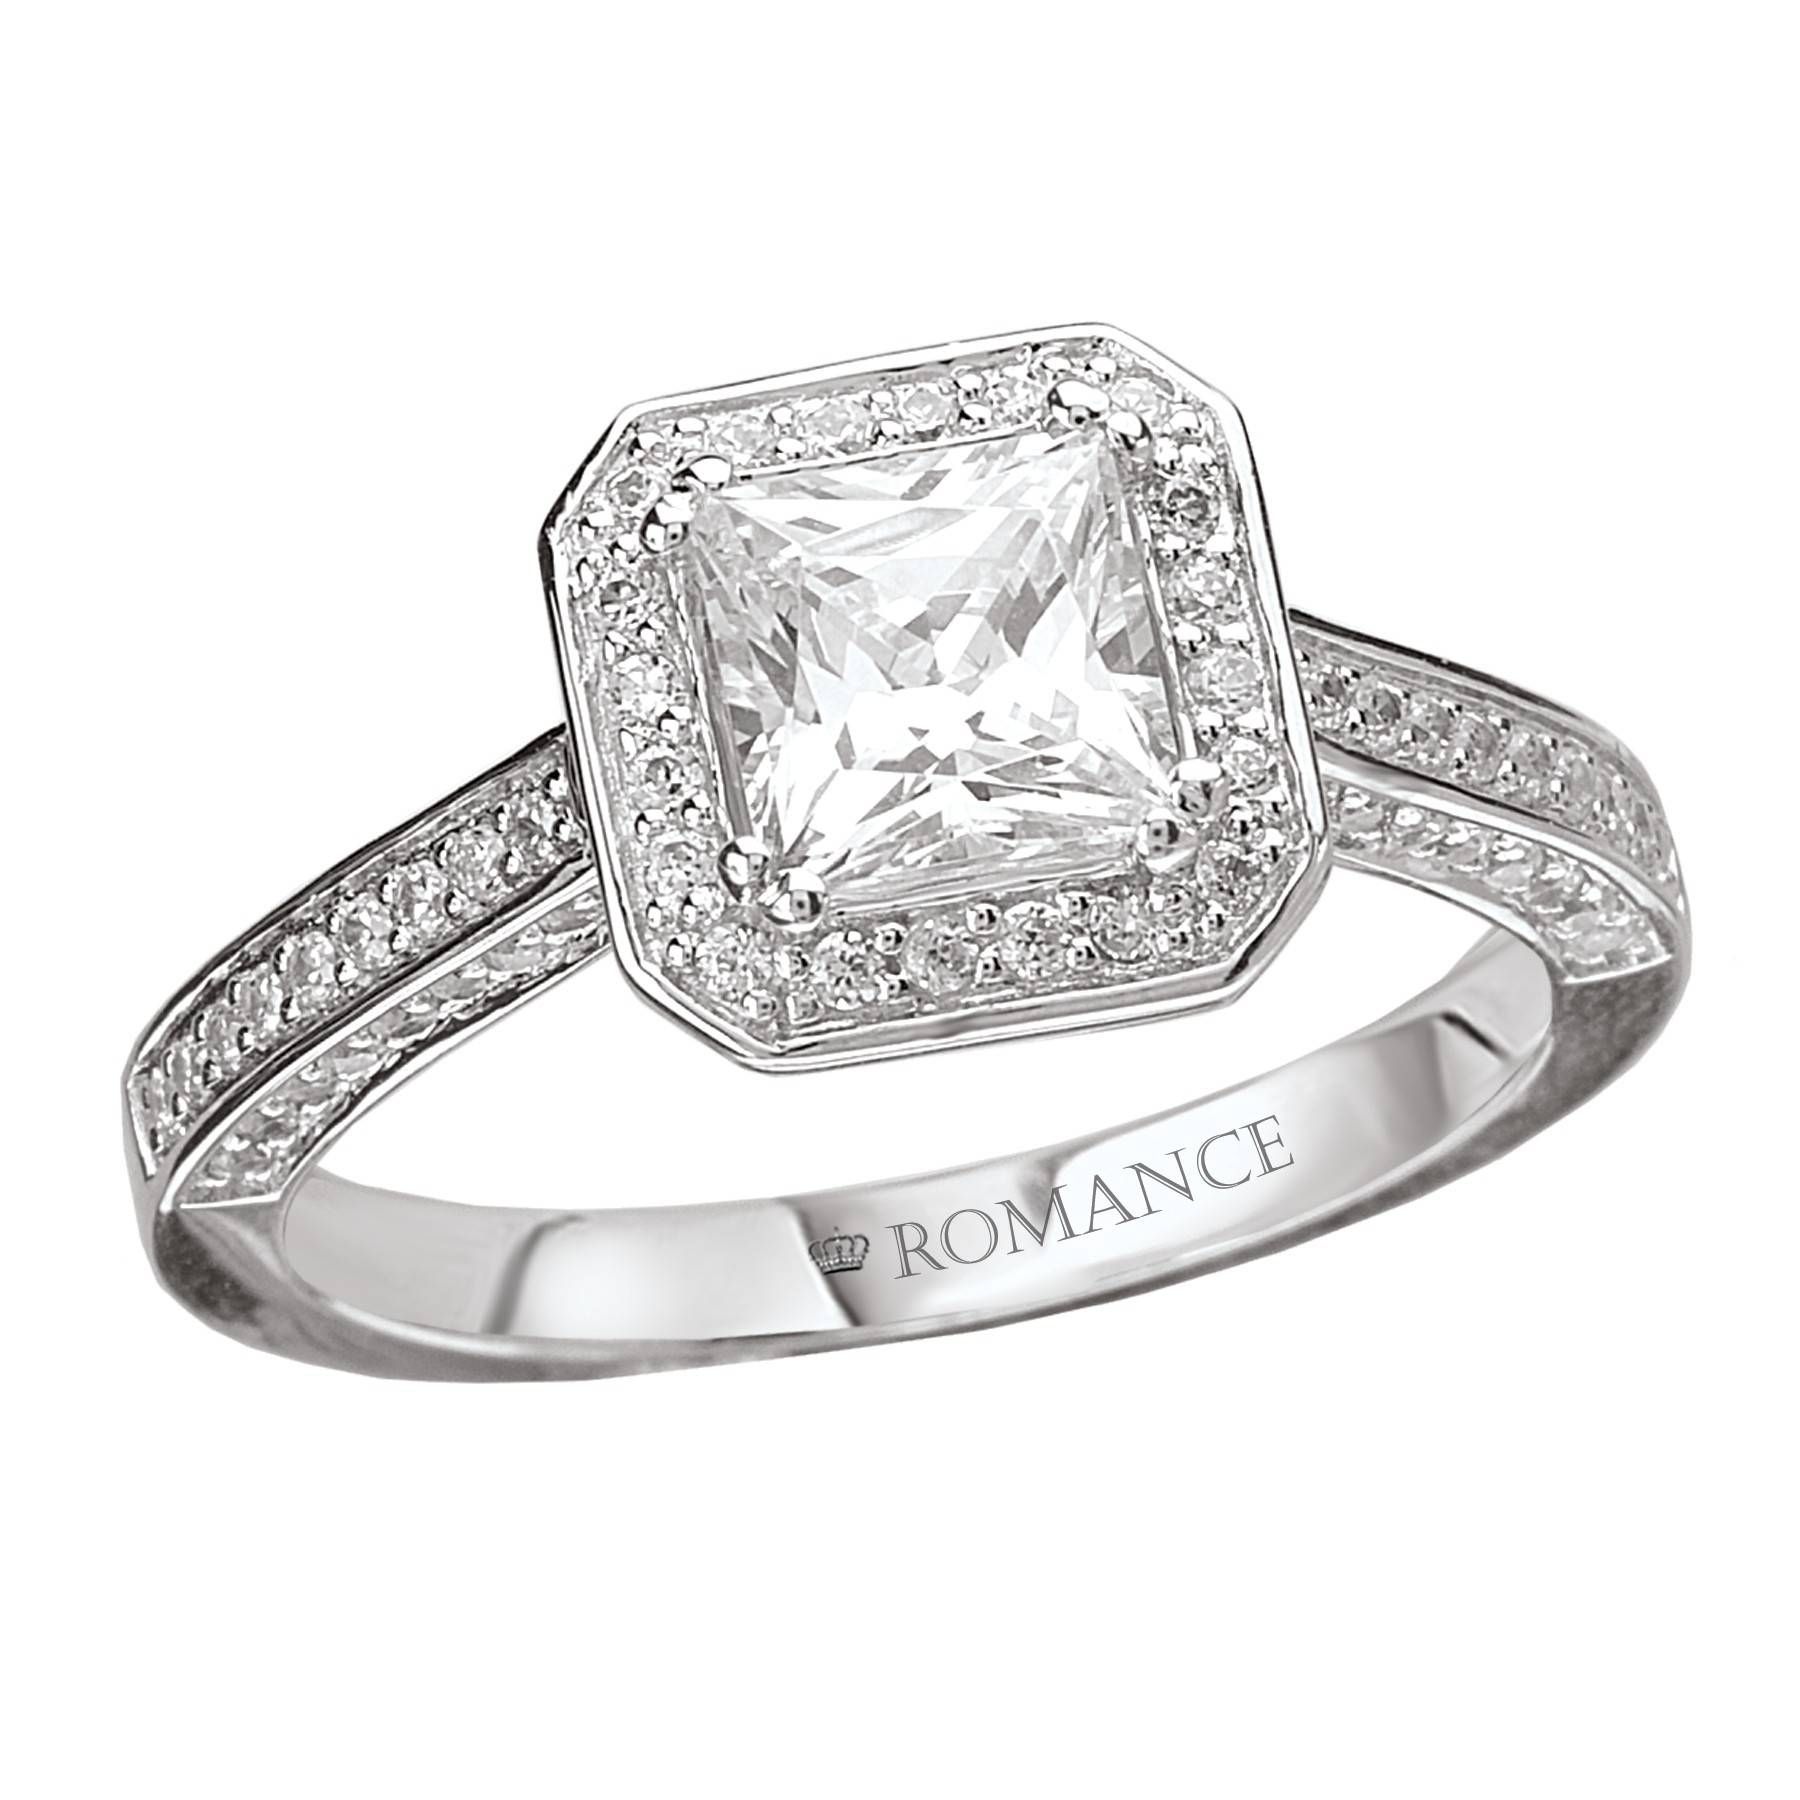 4 Carat Princess Cut Diamond Ring Tags : Princes Cut Wedding Rings For Vintage Princess Cut Wedding Rings (View 15 of 15)